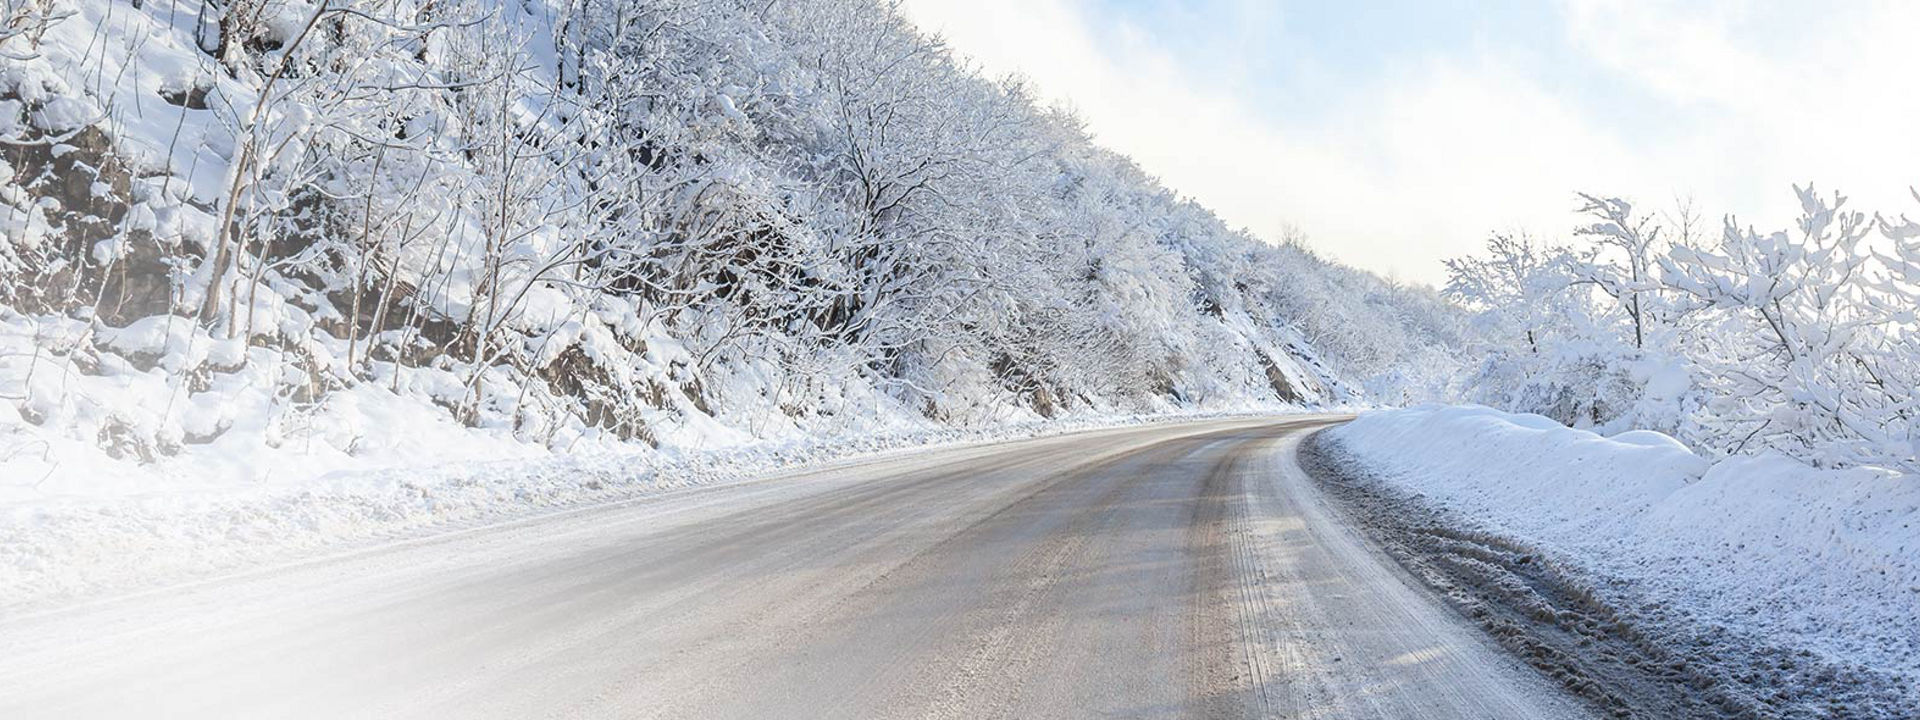 Denna bild visar en vinterväg täckt av snö med spår från Bridgestone vinterdäck för lastbil. 